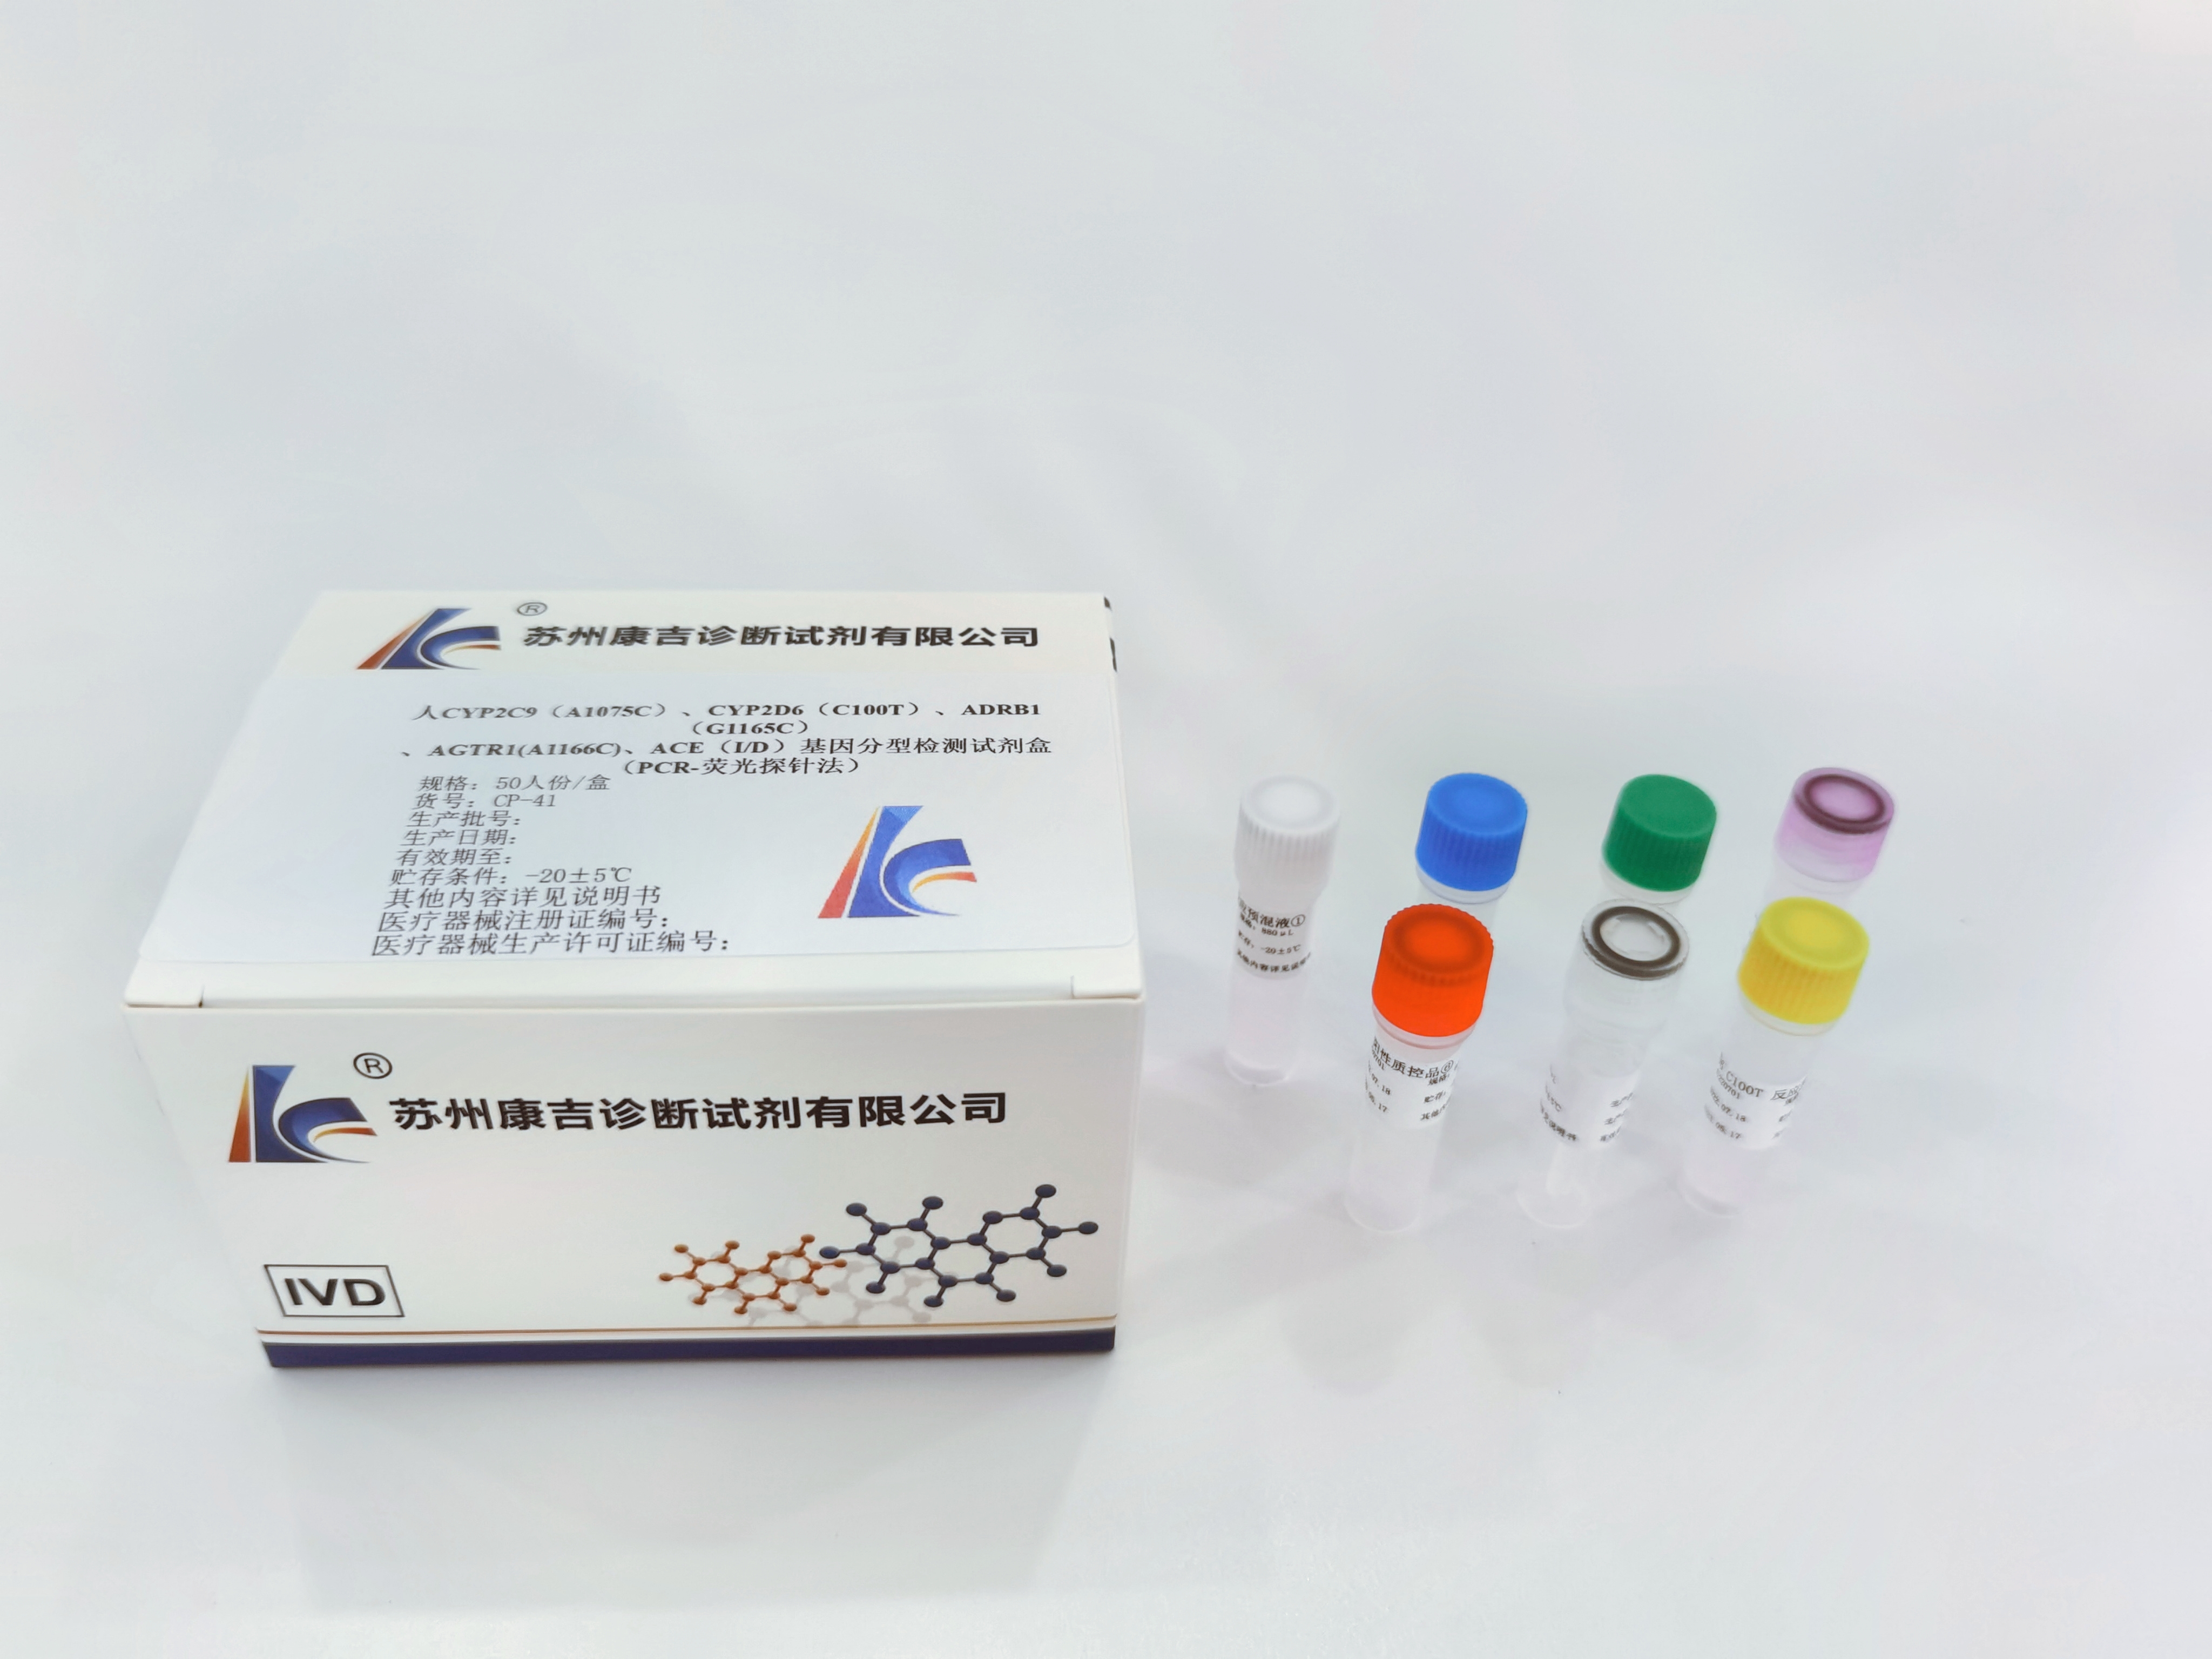 人CYP2C9（A1075C）、CYP2D6（C100T）、ADRB1（G1165C）、AGTR1(A1166C)、ACE（ID）基因分型检测试剂盒（PCR-荧光探针法） (2).jpg